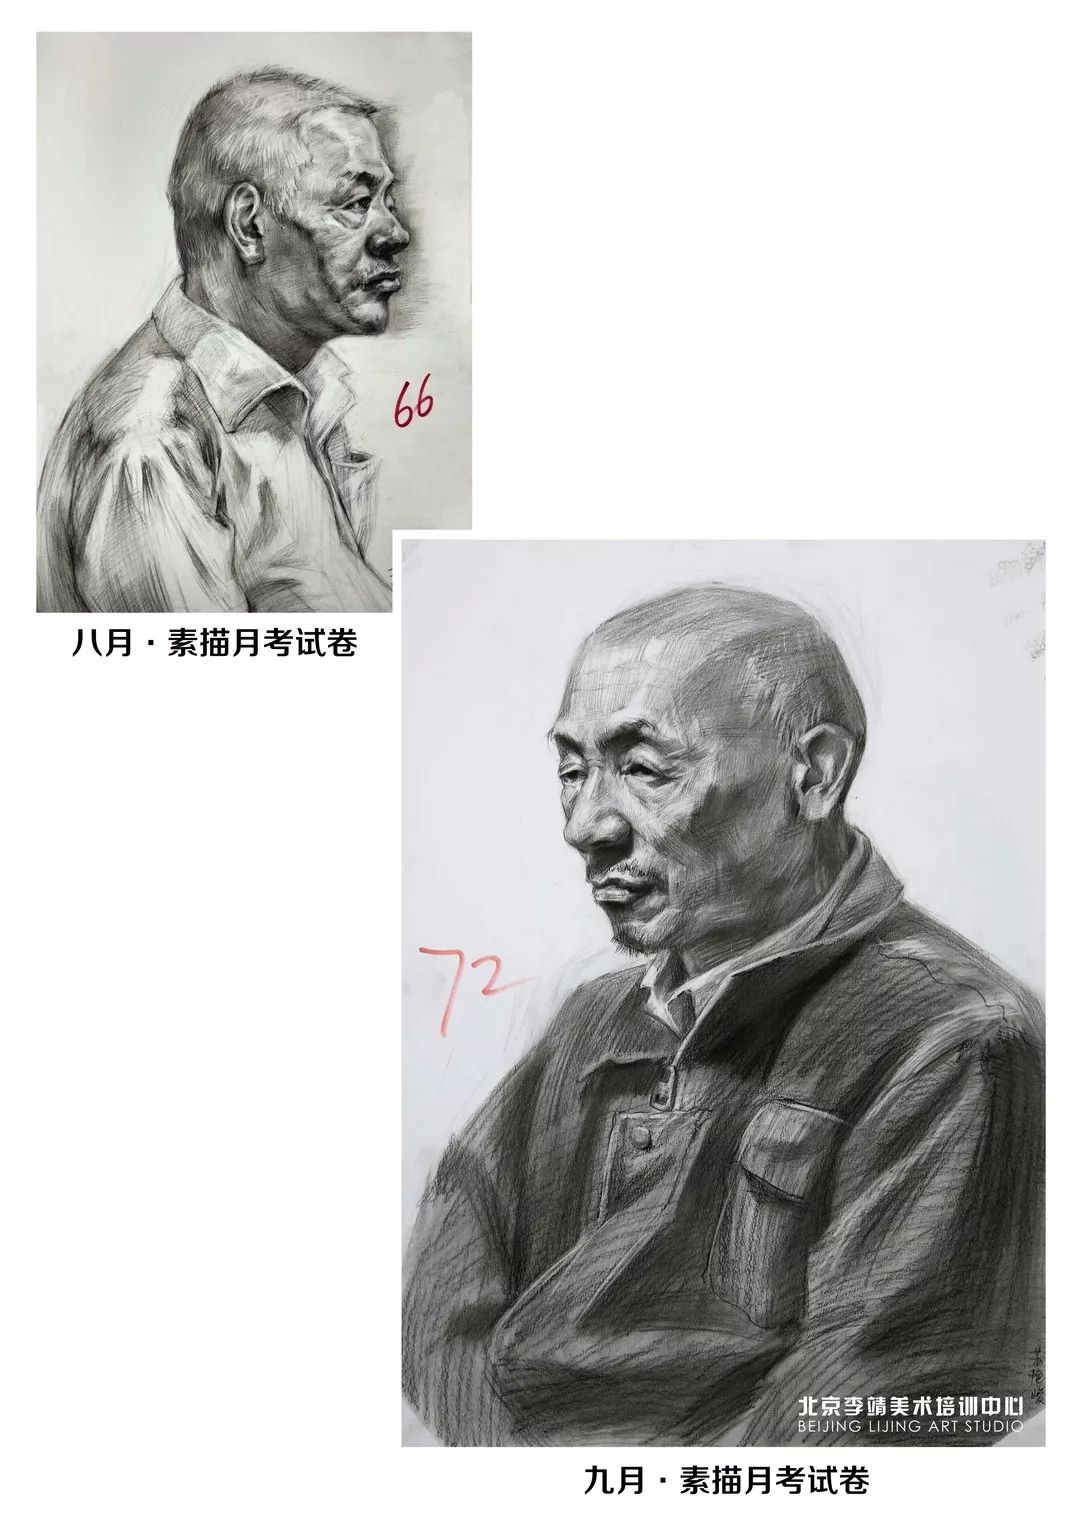 从优秀到更优秀,北京画室,北京美术培训 12